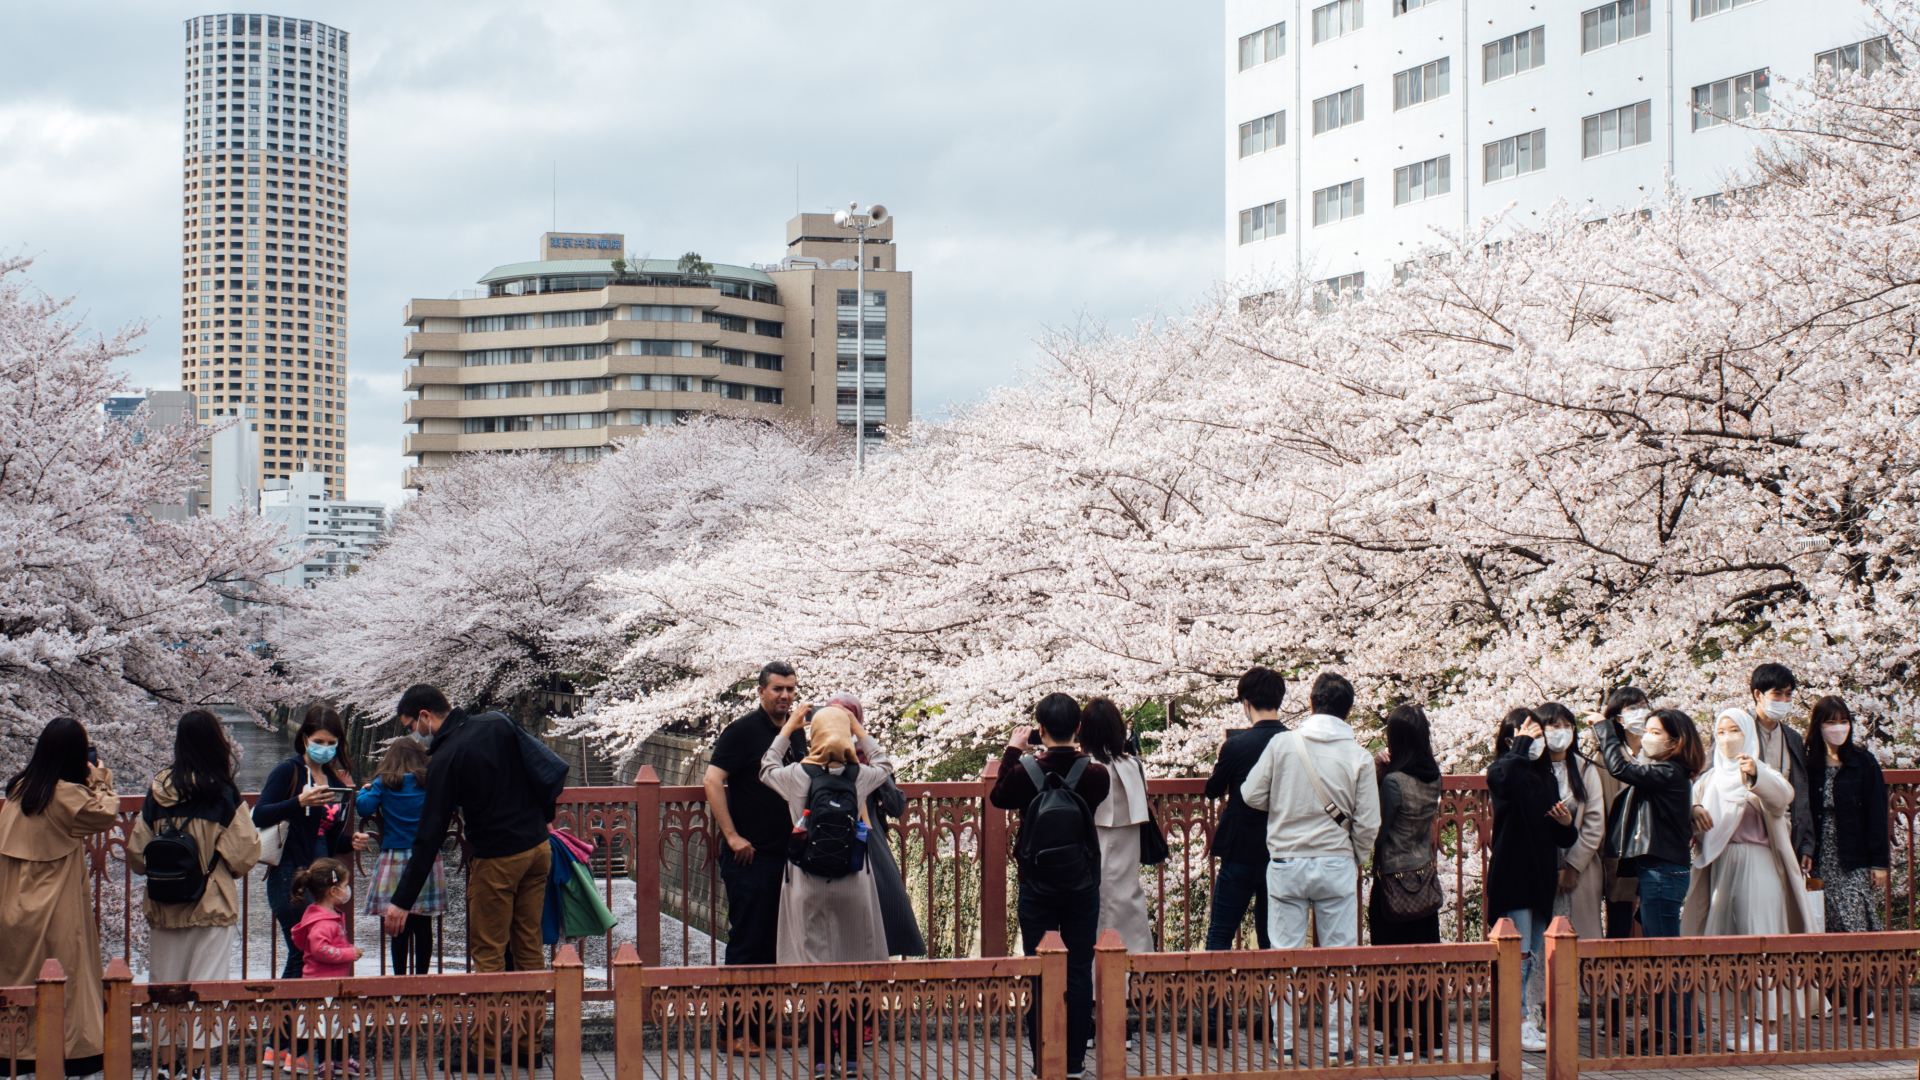 Menschen in Tokio, Japan,  machen Fotos unter Bäumen während des Kirschblütenfestes | dpa